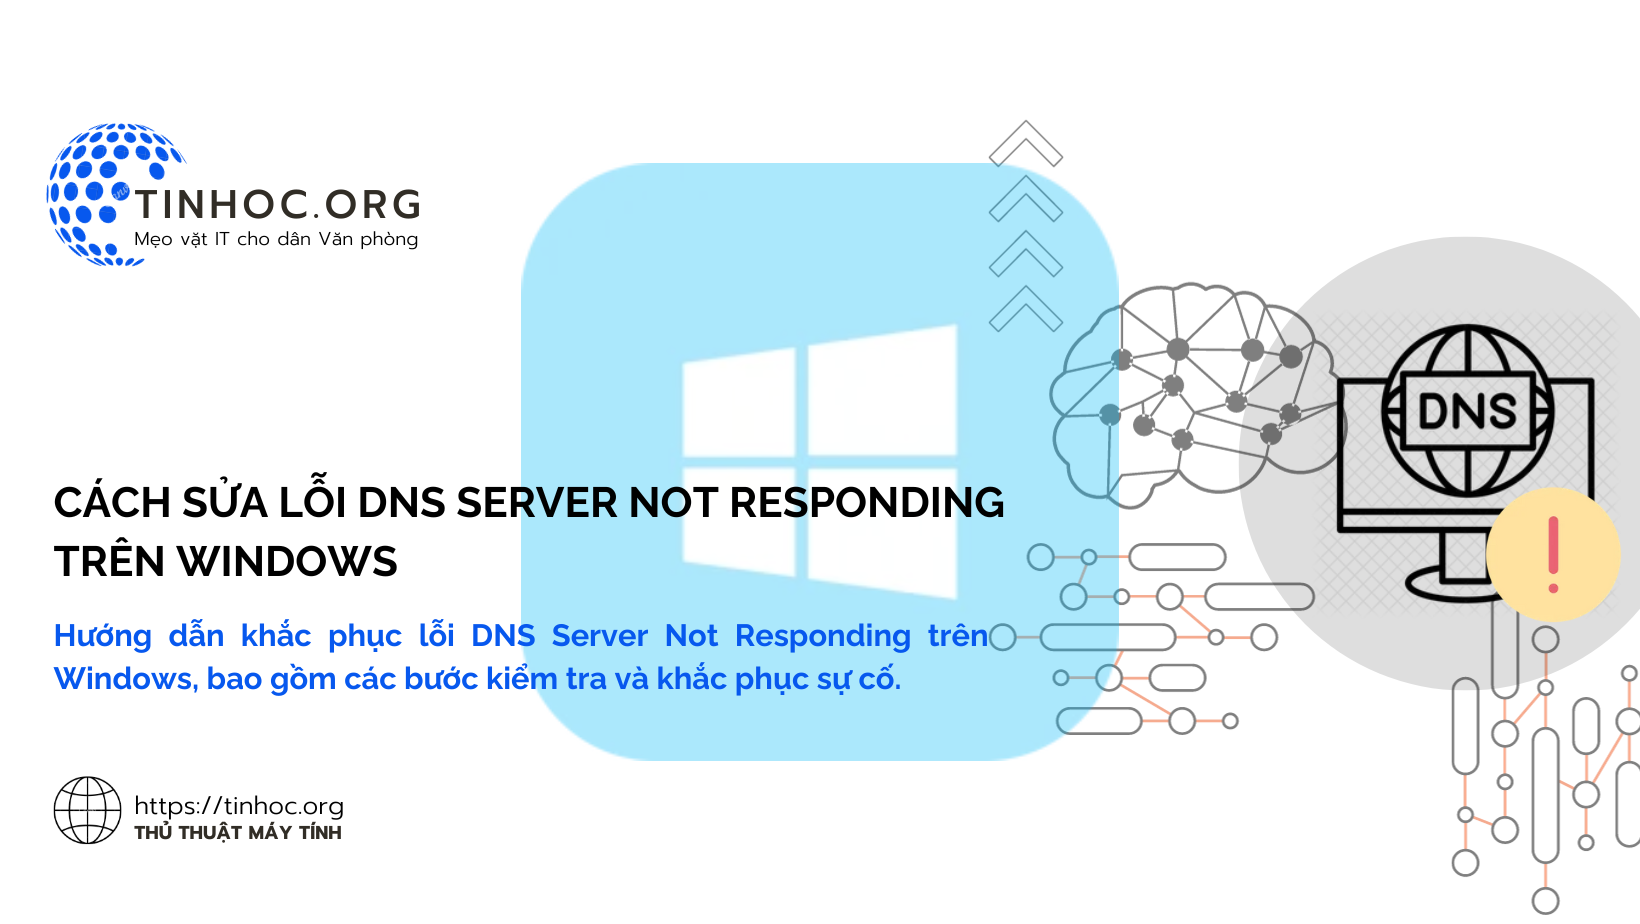 Hướng dẫn khắc phục lỗi DNS Server Not Responding trên Windows, bao gồm các bước kiểm tra và khắc phục sự cố.